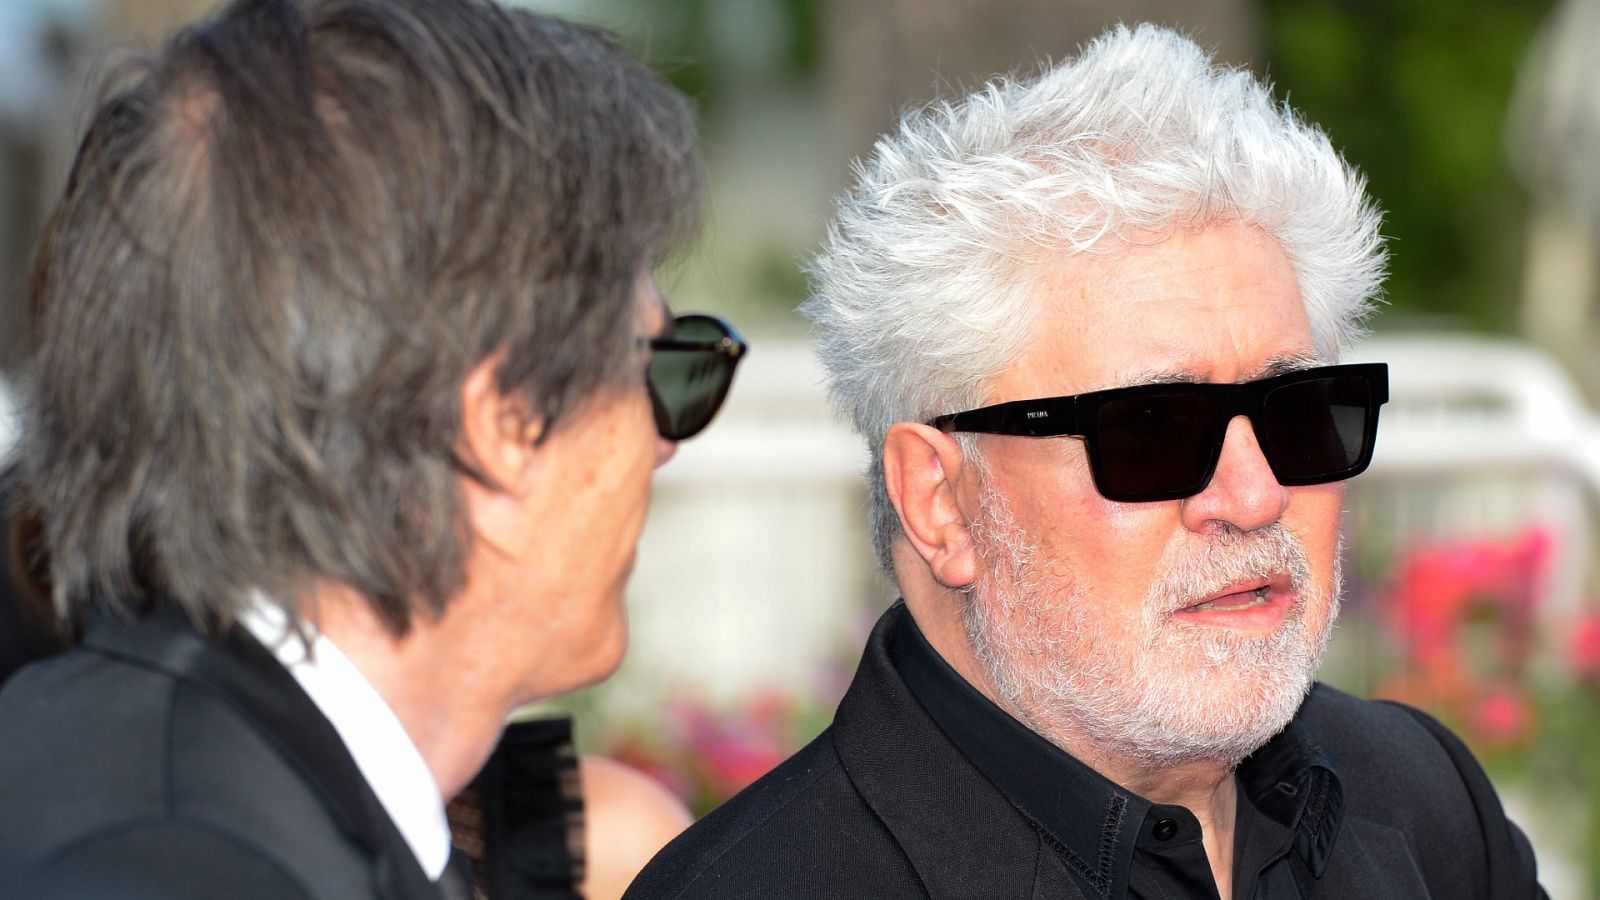 El director español de cine Pedro Almodóvar en una imagen reciente en el Festival de Cannes